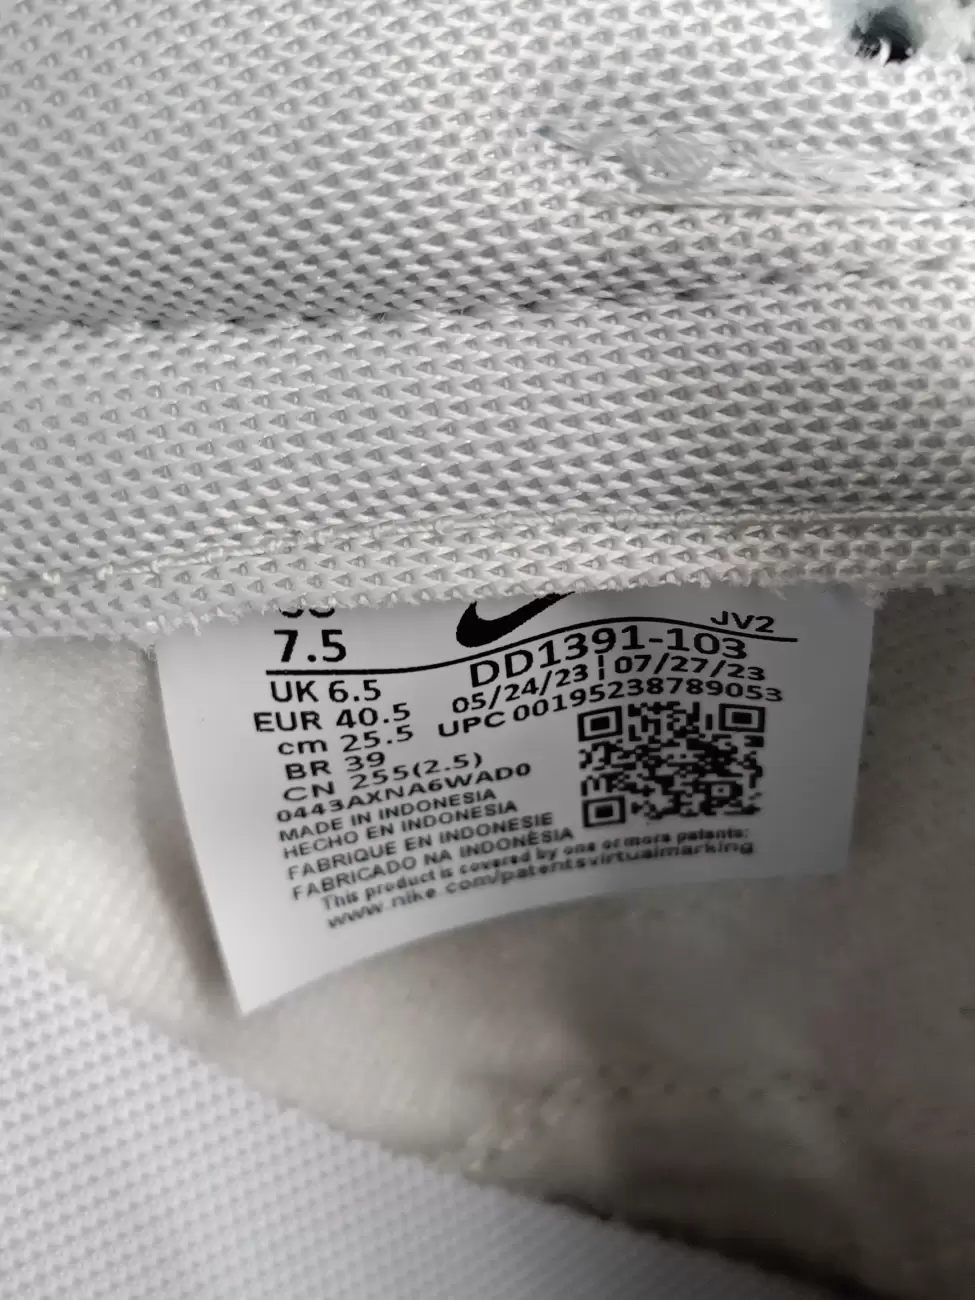 892 - Nike Dunk Low Grey Fog | Item Details - AG Lab | AfterMarket